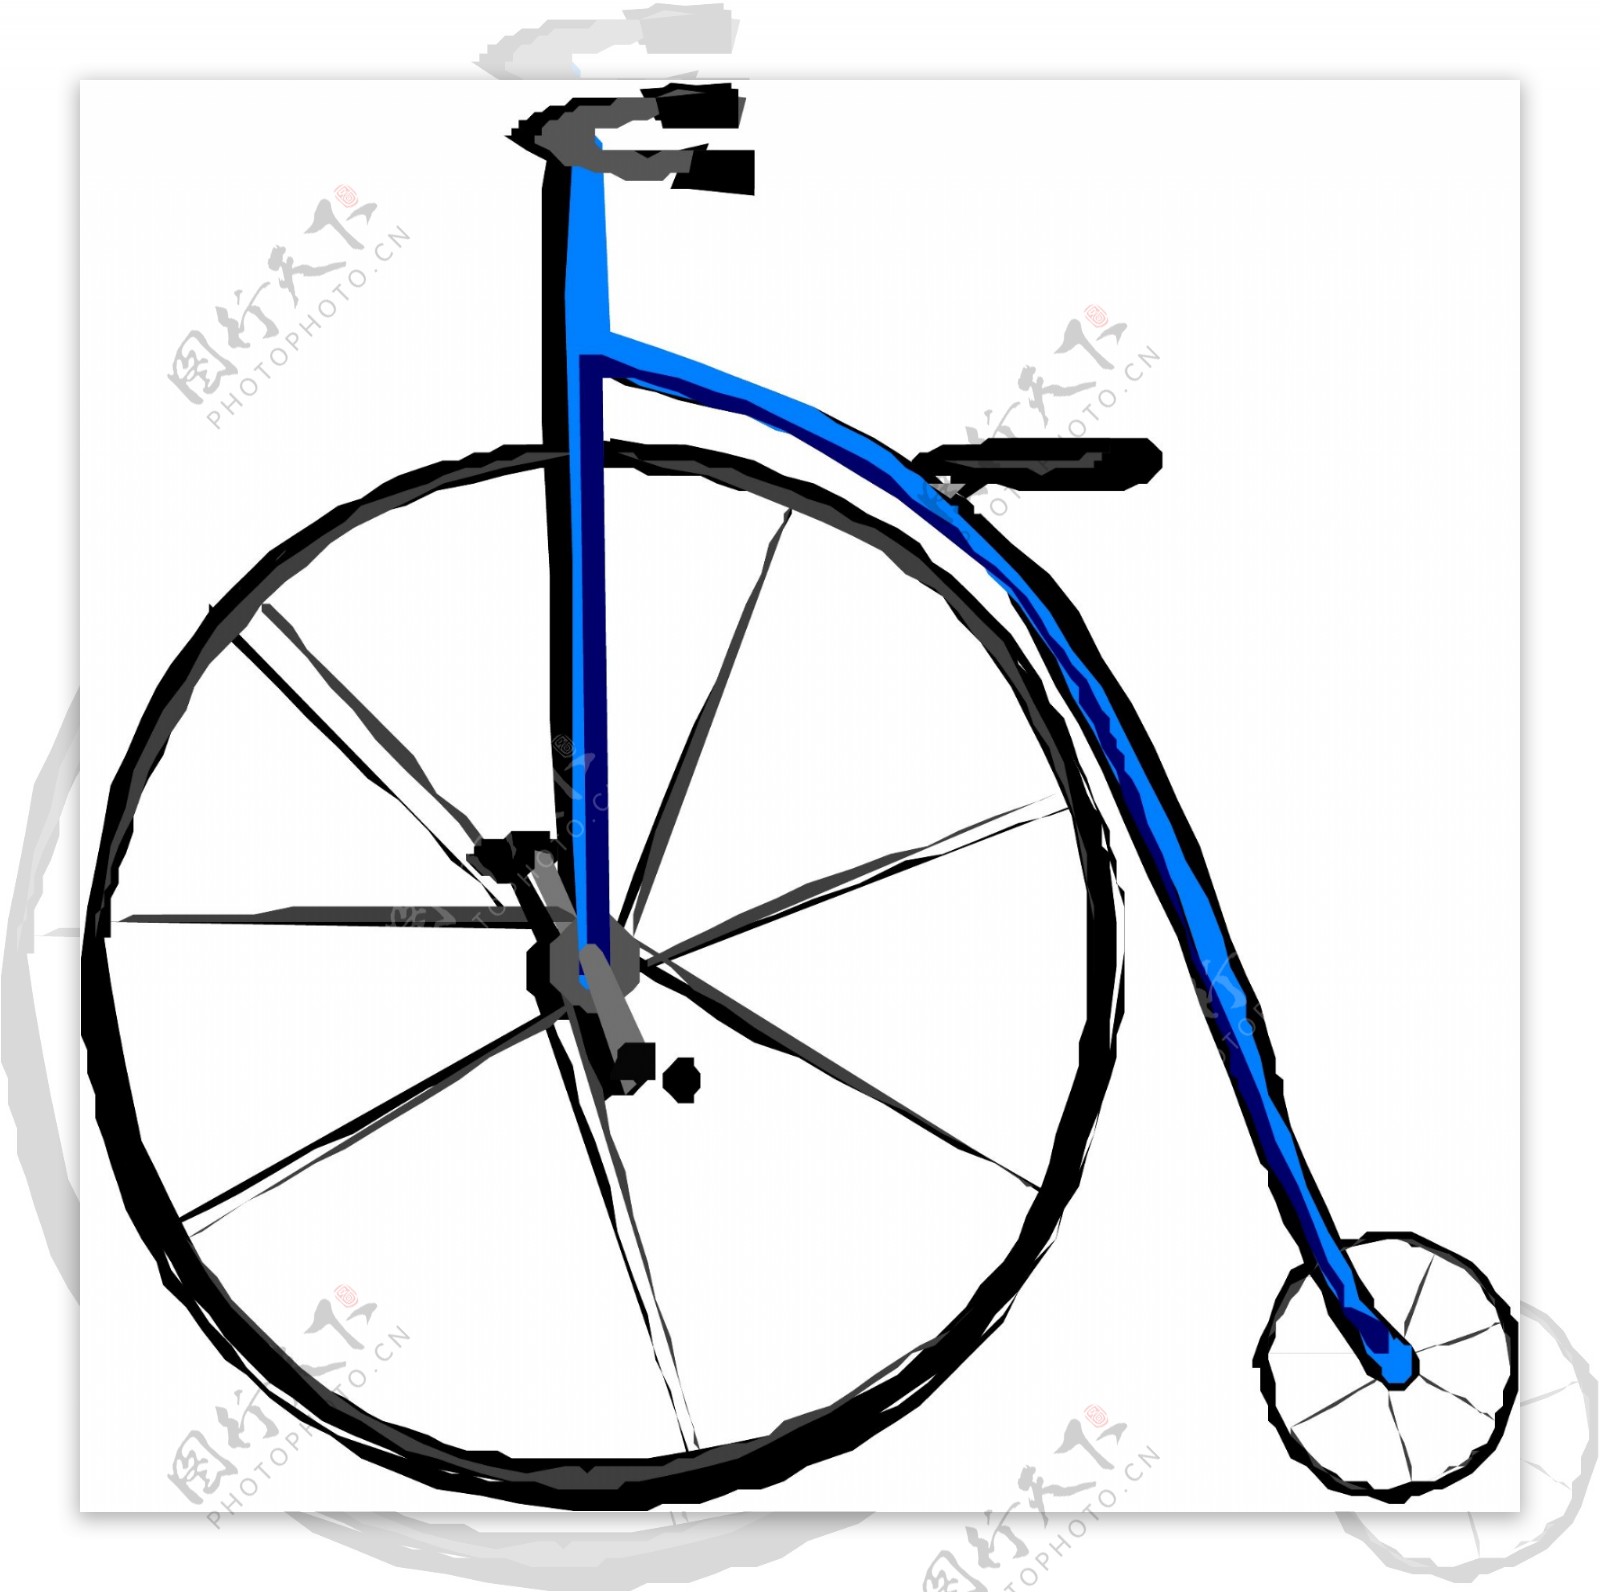 自行车矢量素材EPS格式0022